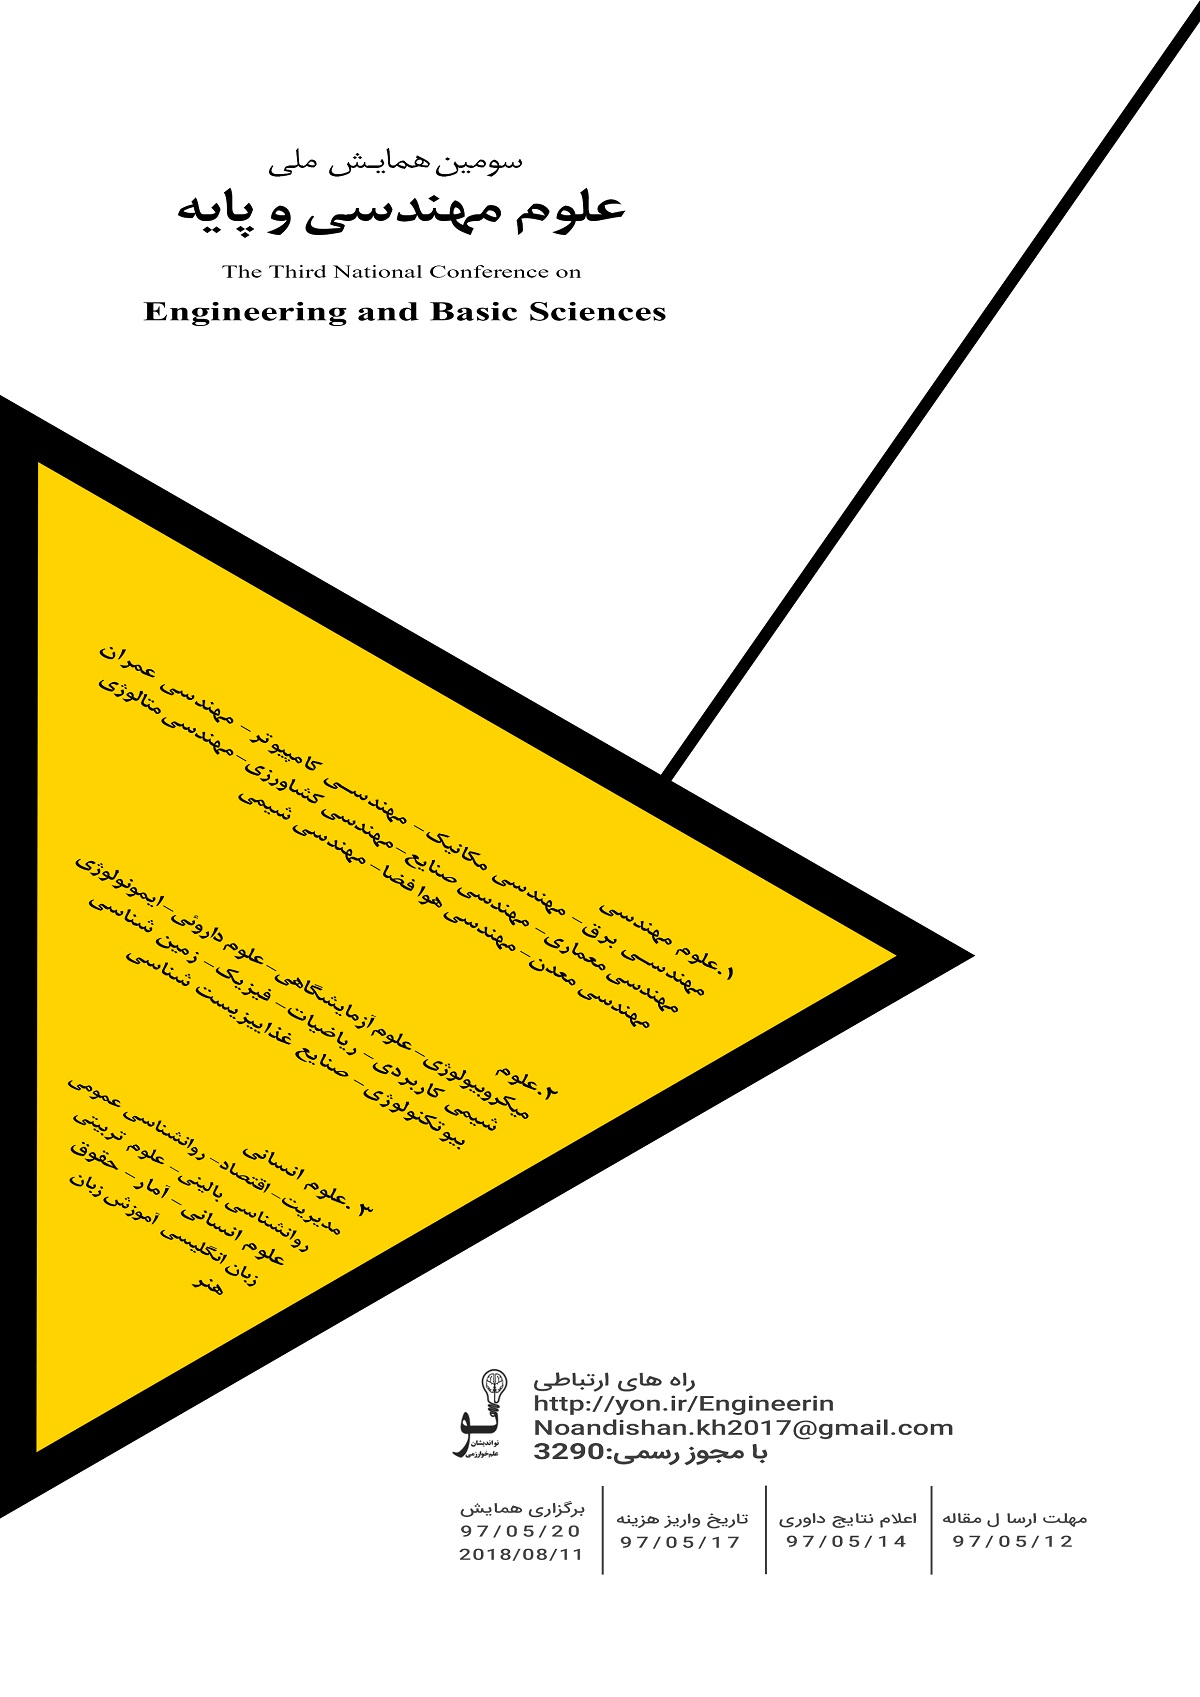 پوستر سومین همایش ملی علوم مهندسی و پایه